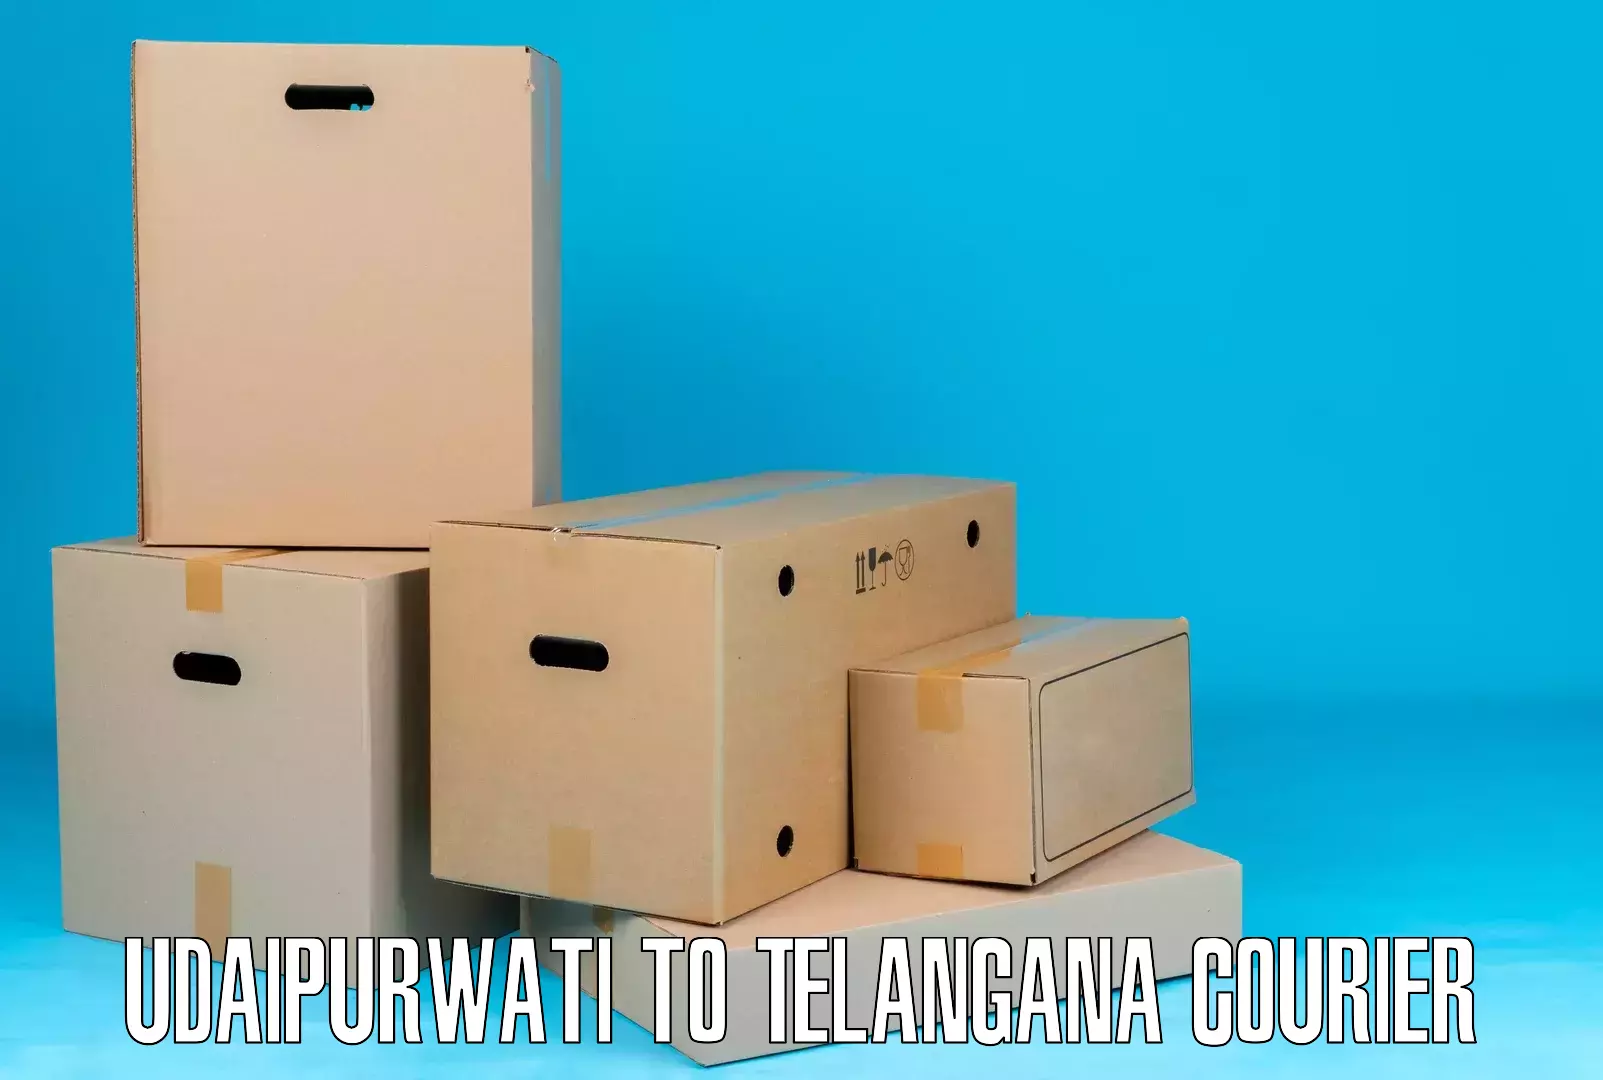 Modern courier technology Udaipurwati to Jannaram